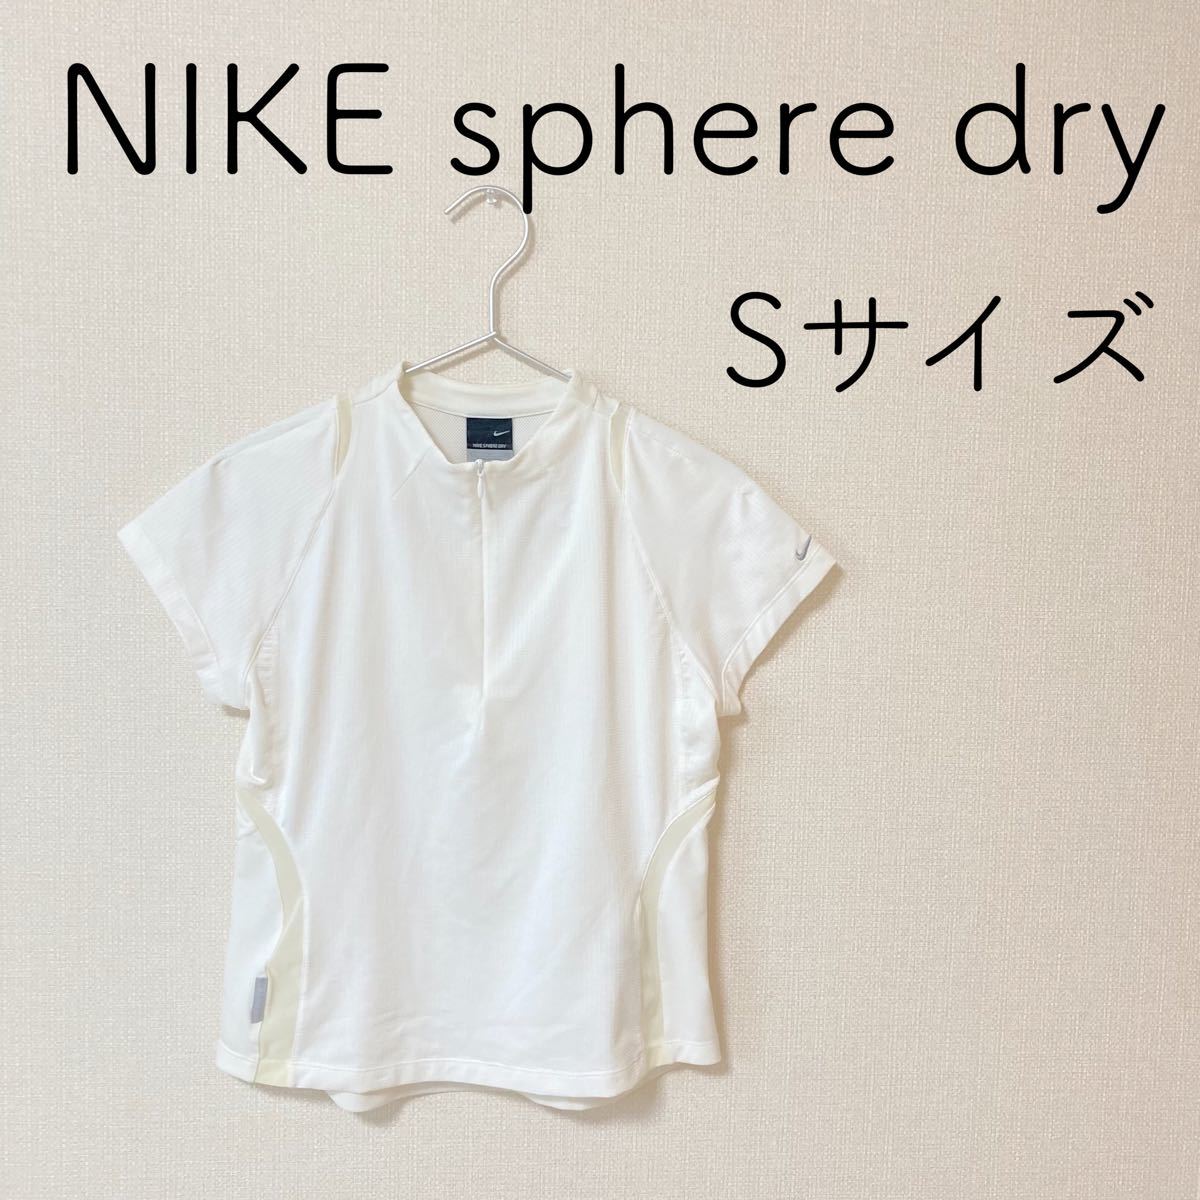 PayPayフリマ｜NIKE nike sphere dry ナイキ スフィアドライ S レディース